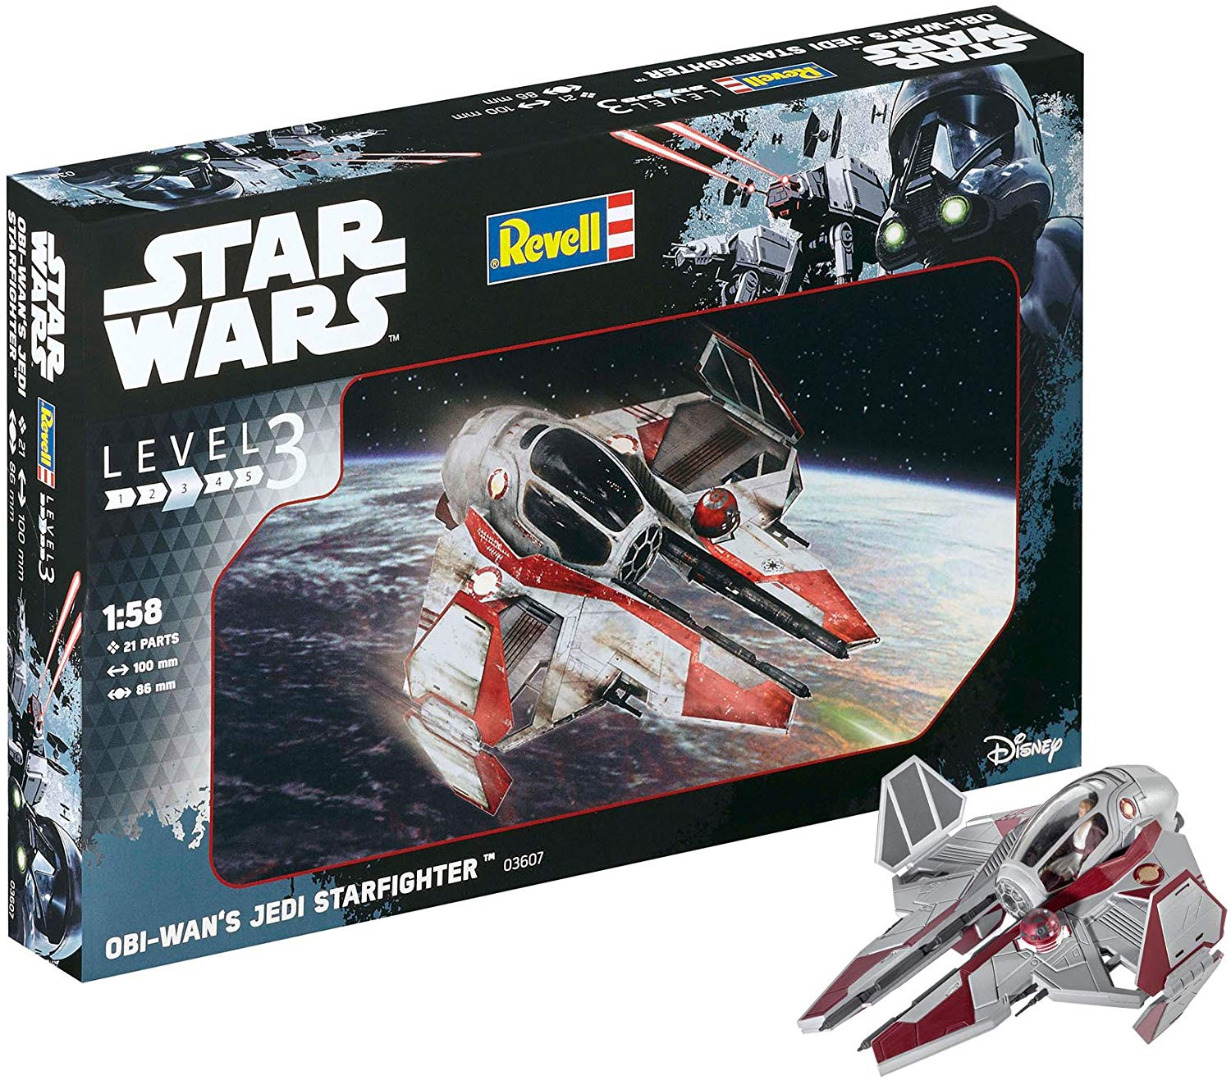 Star Wars Rogue One Model Kit 1:58 Obi Wan's Jedi Starfighter 10 cm